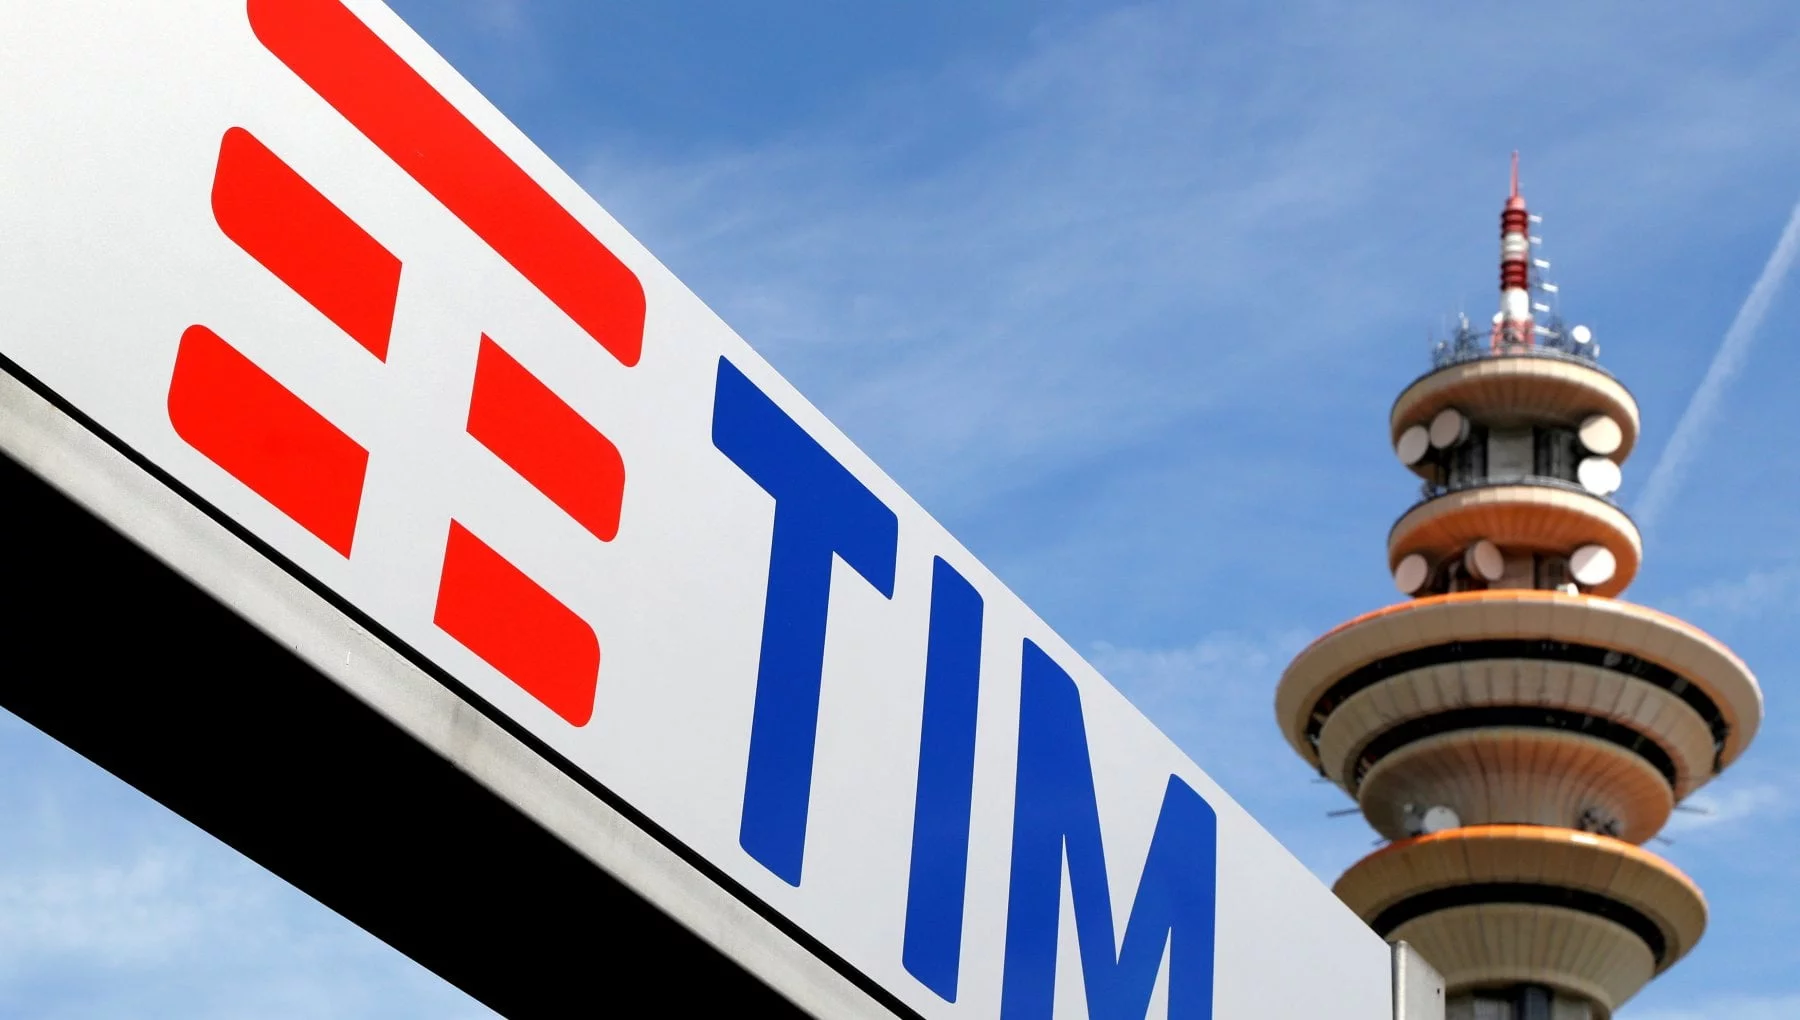 Le Borse europee provano a rimbalzare, a Piazza Affari svetta Telecom Italia